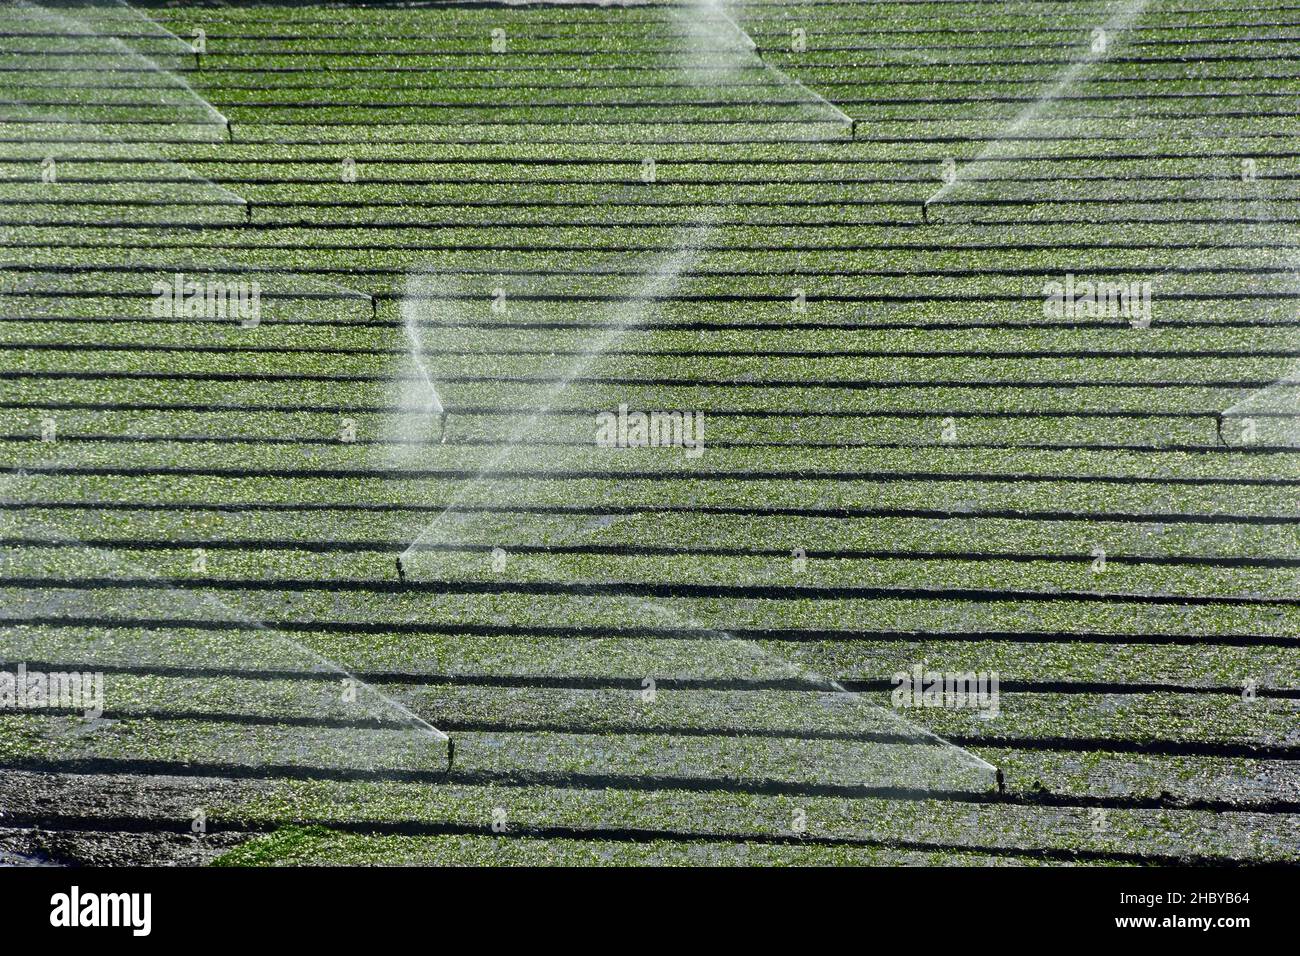 Feld mit Reihen von Spinat, Bewässerung, Landwirtschaft im Süden, auf Andalusien, Spanien Stockfoto